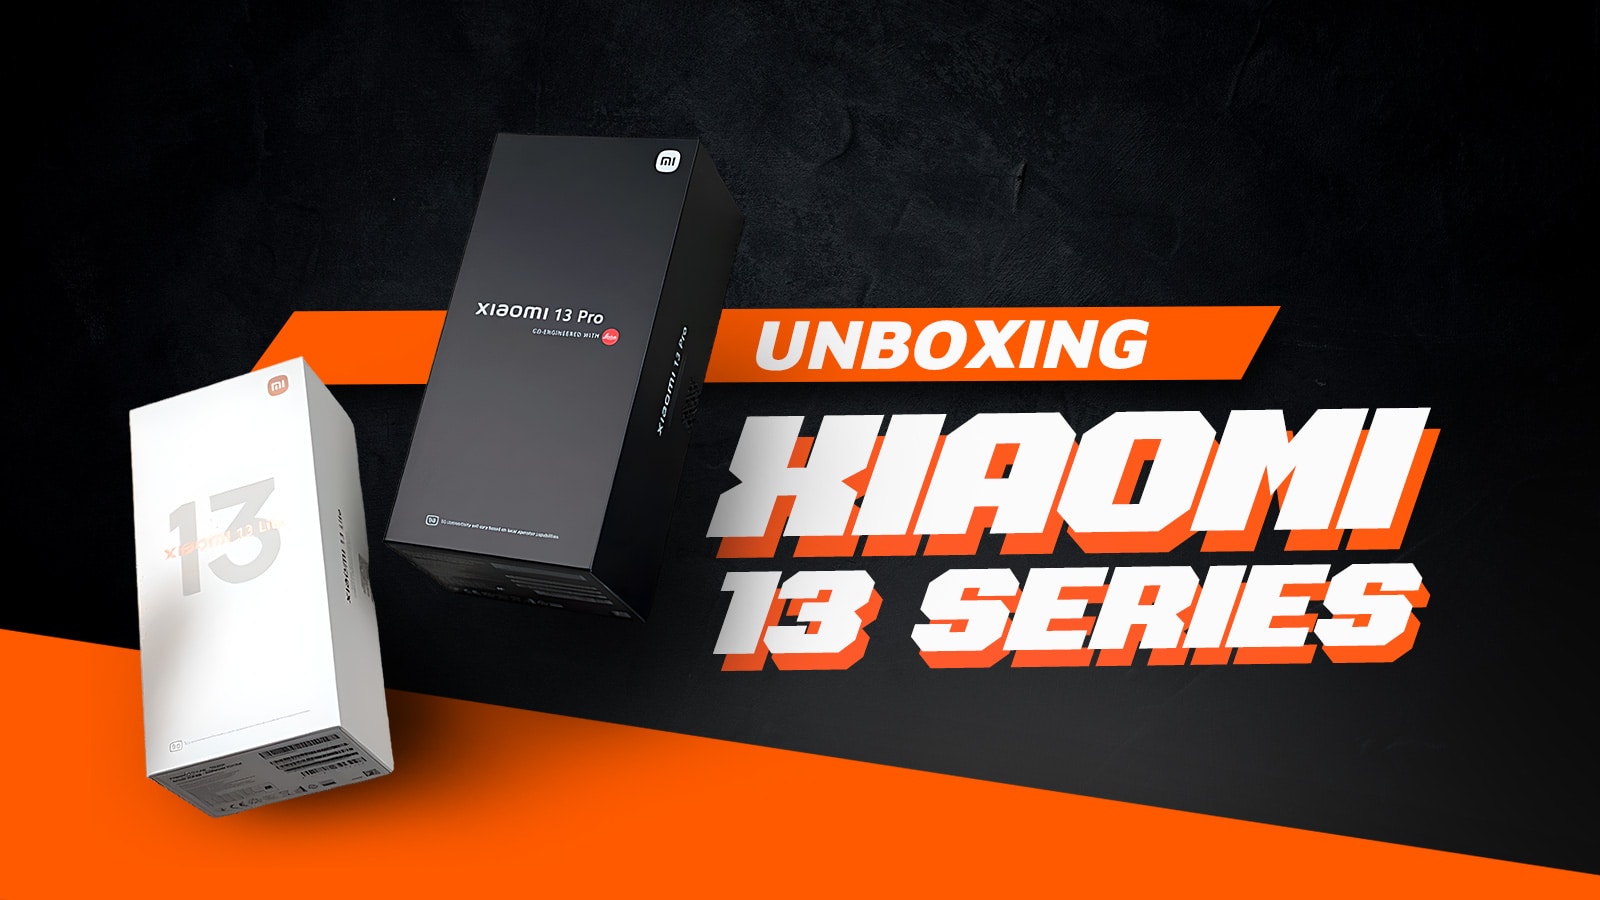 Xiaomi 13 Greek unboxing, Xiaomi 13 Pro, Xiaomi 13 Lite, Xiaomi 13 σε ελληνικό unboxing video